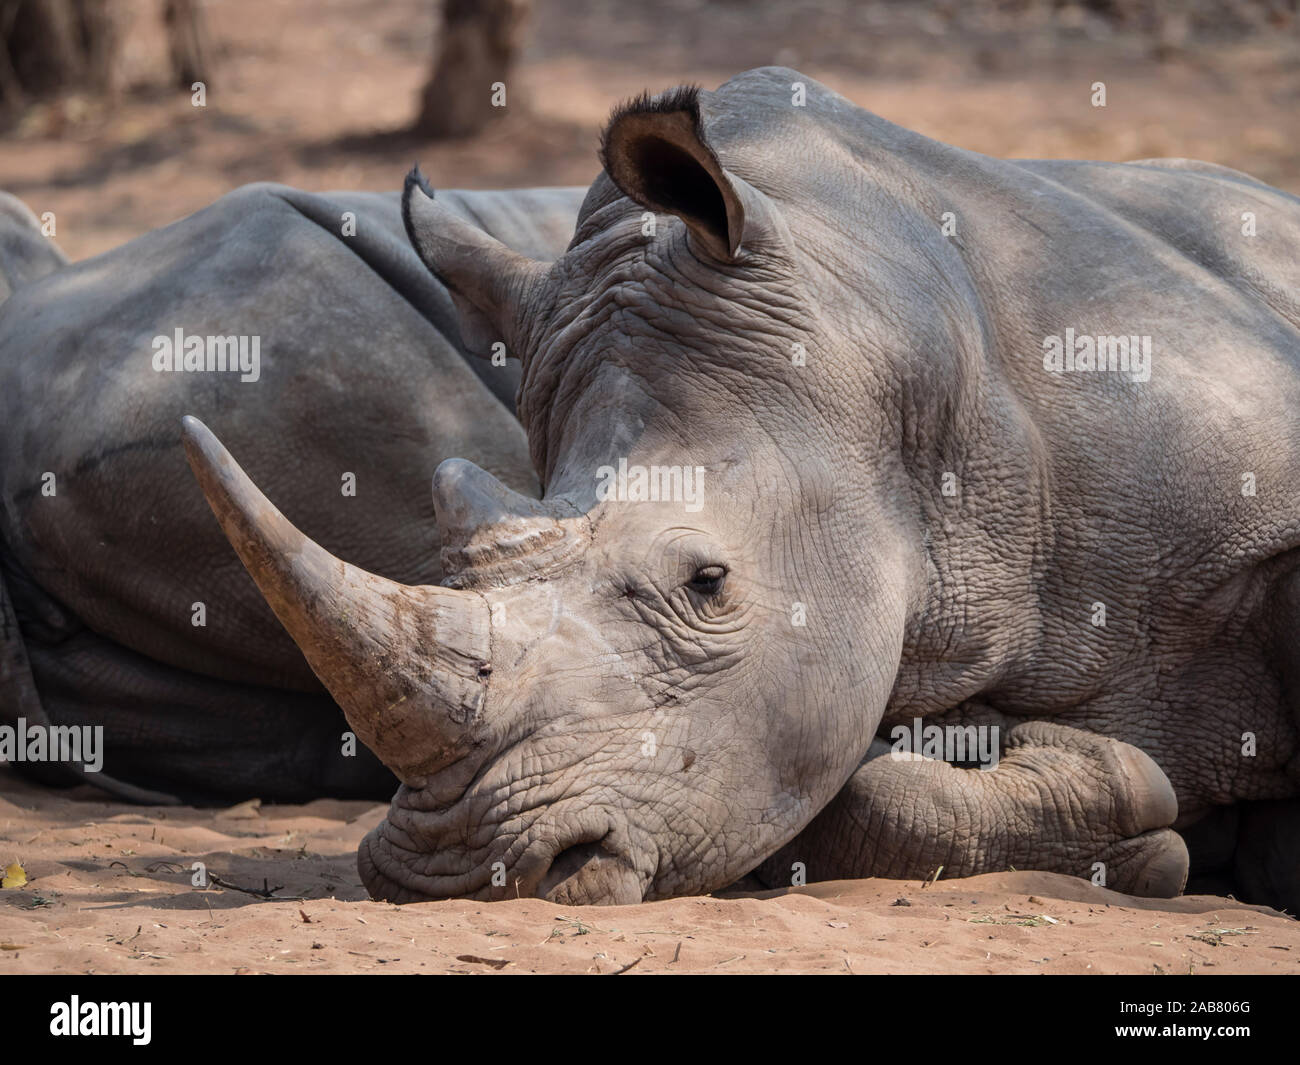 Un adulte rhinocéros blanc du sud (Ceratotherium simum simum), gardé en parc national de Mosi-oa-Tunya, Zambie, Afrique Banque D'Images